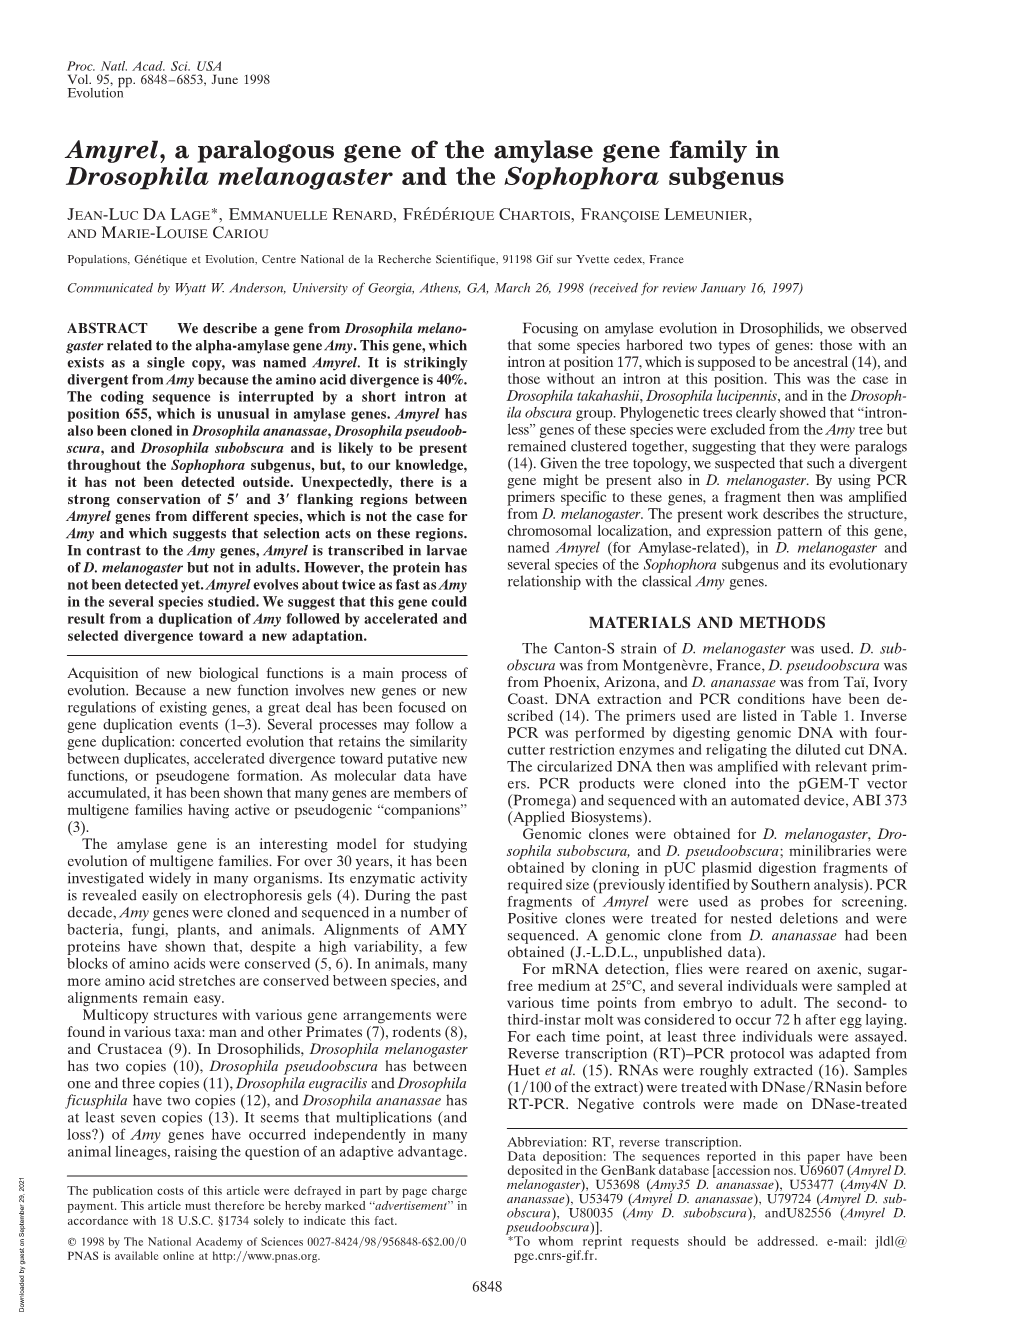 Amyrel, a Paralogous Gene of the Amylase Gene Family in Drosophila Melanogaster and the Sophophora Subgenus